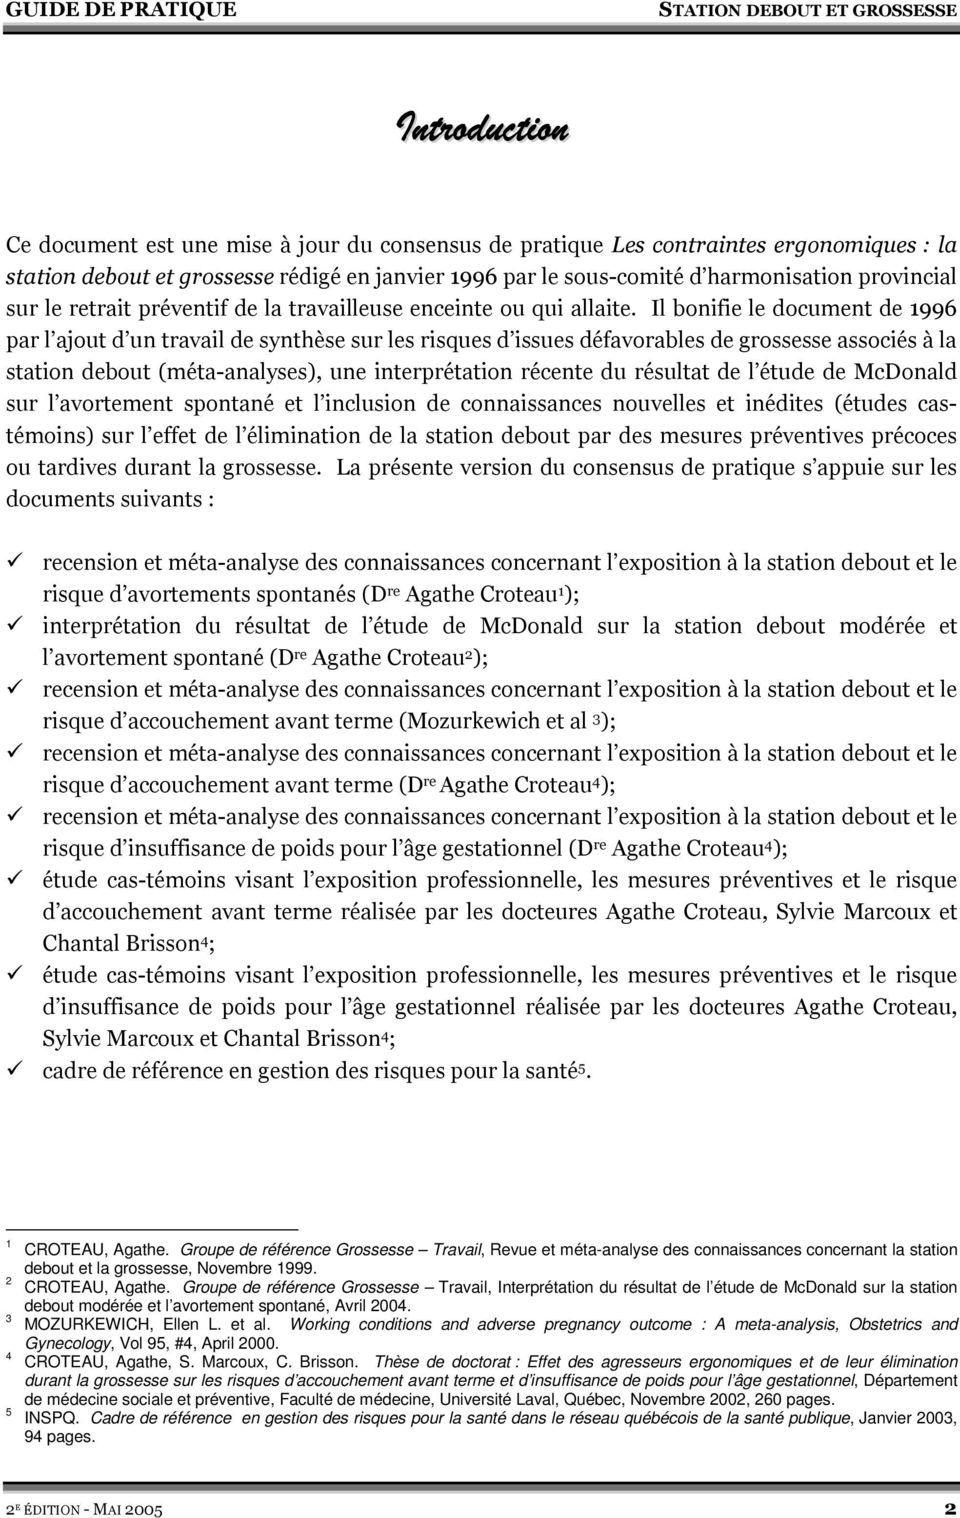 Groupe de référence Grossesse Travail, Revue et méta-analyse des connaissances concernant la station debout et la grossesse, Novembre 1999. CROTEAU, Agathe.